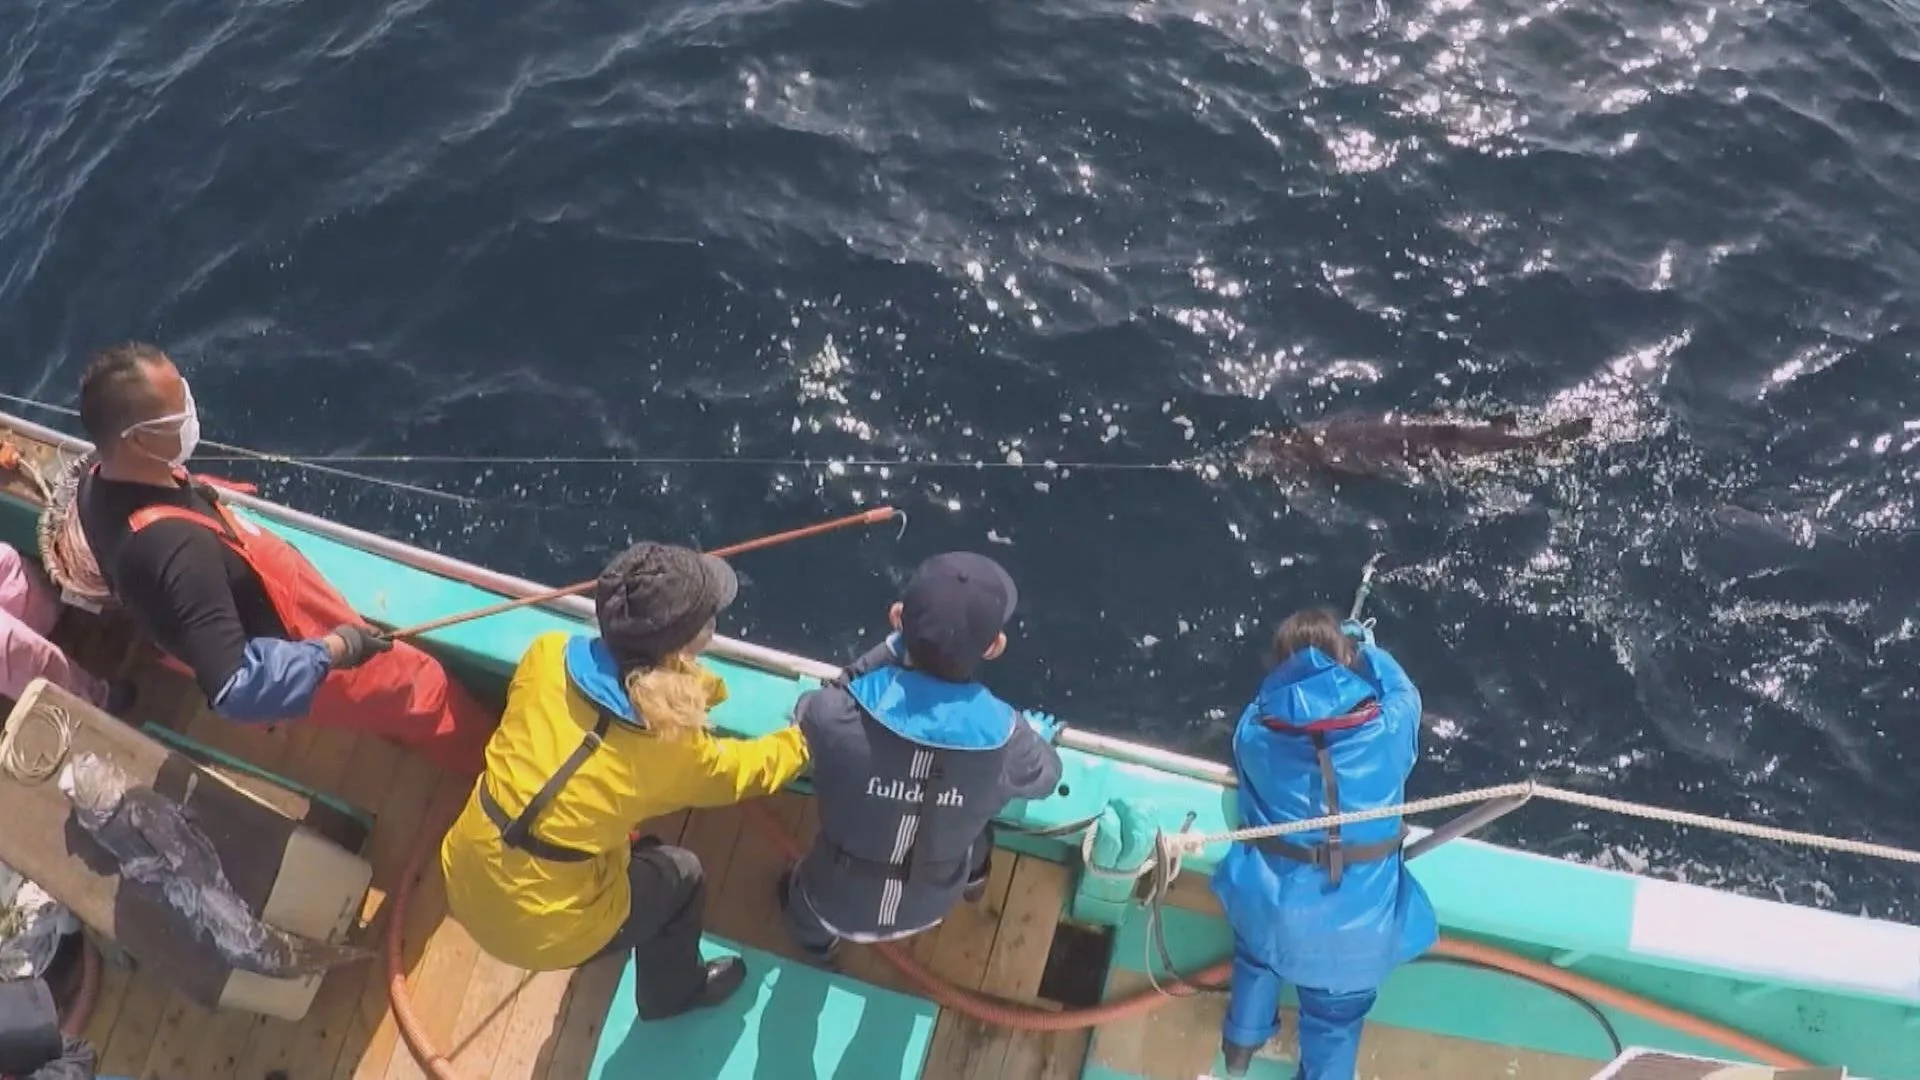 『爆笑問題の深海WANTED7』でヨコヅナイワシが捕獲された